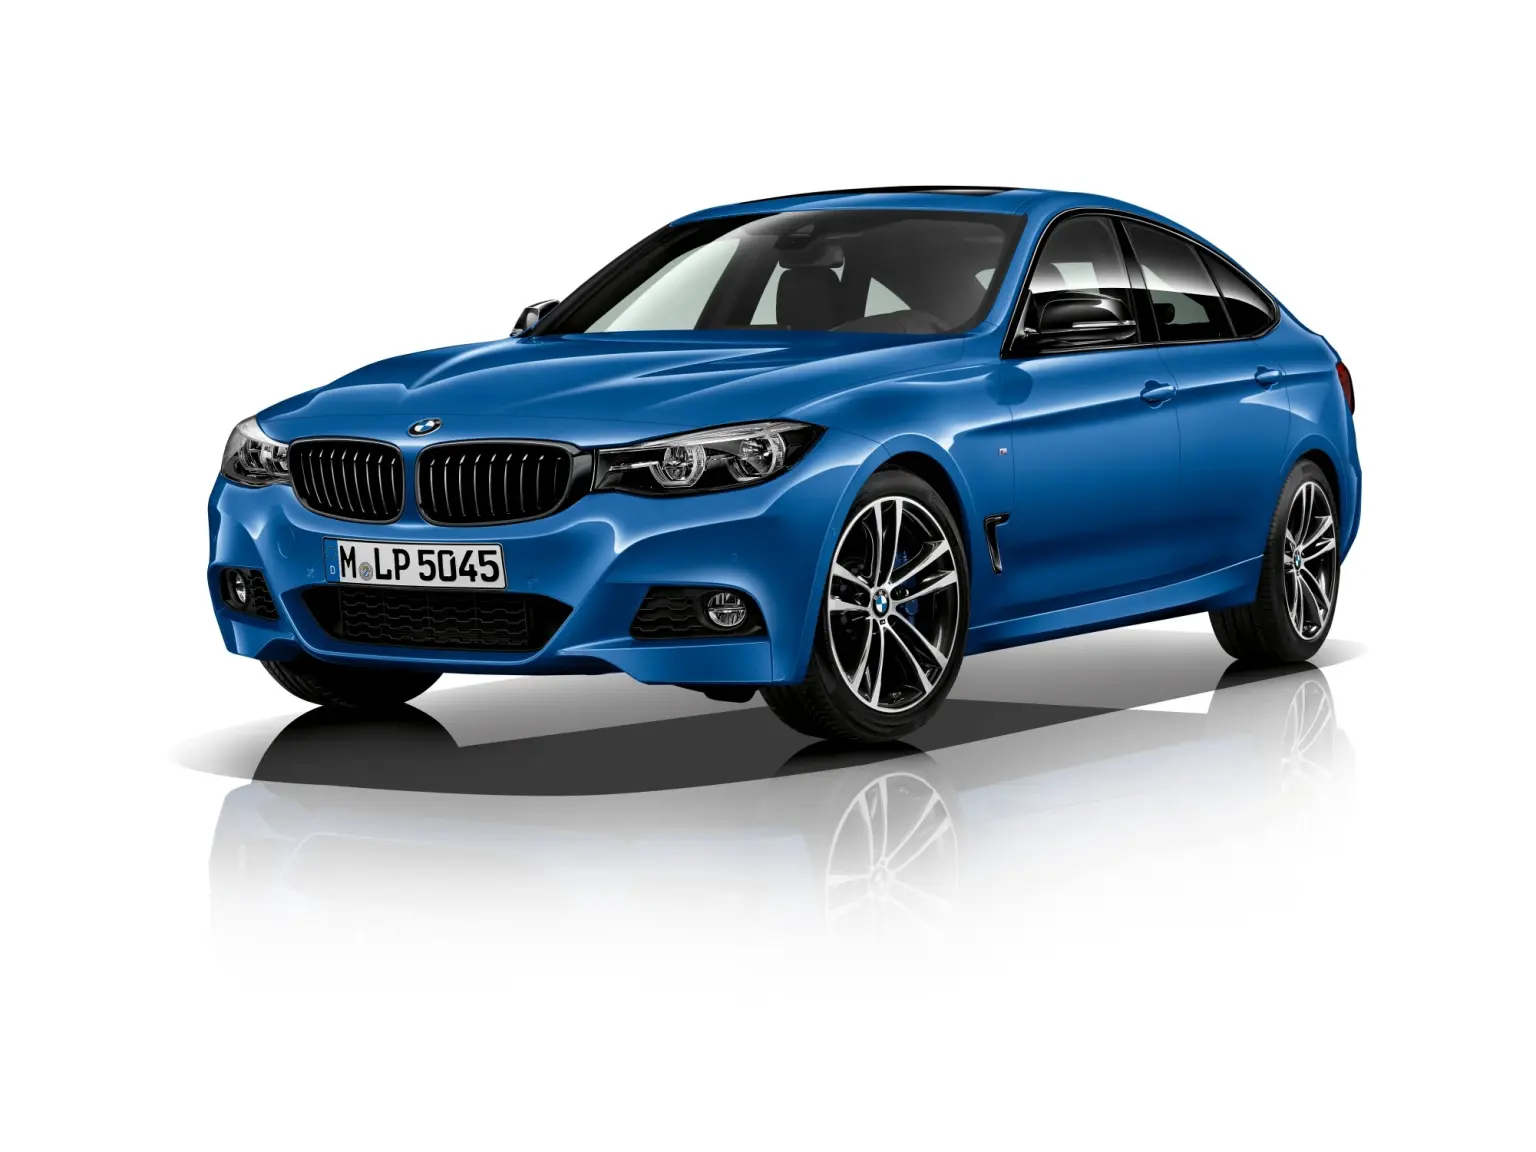 Технические характеристики BMW 3 серии – подробное описание мощности, габаритов и особенностей модели